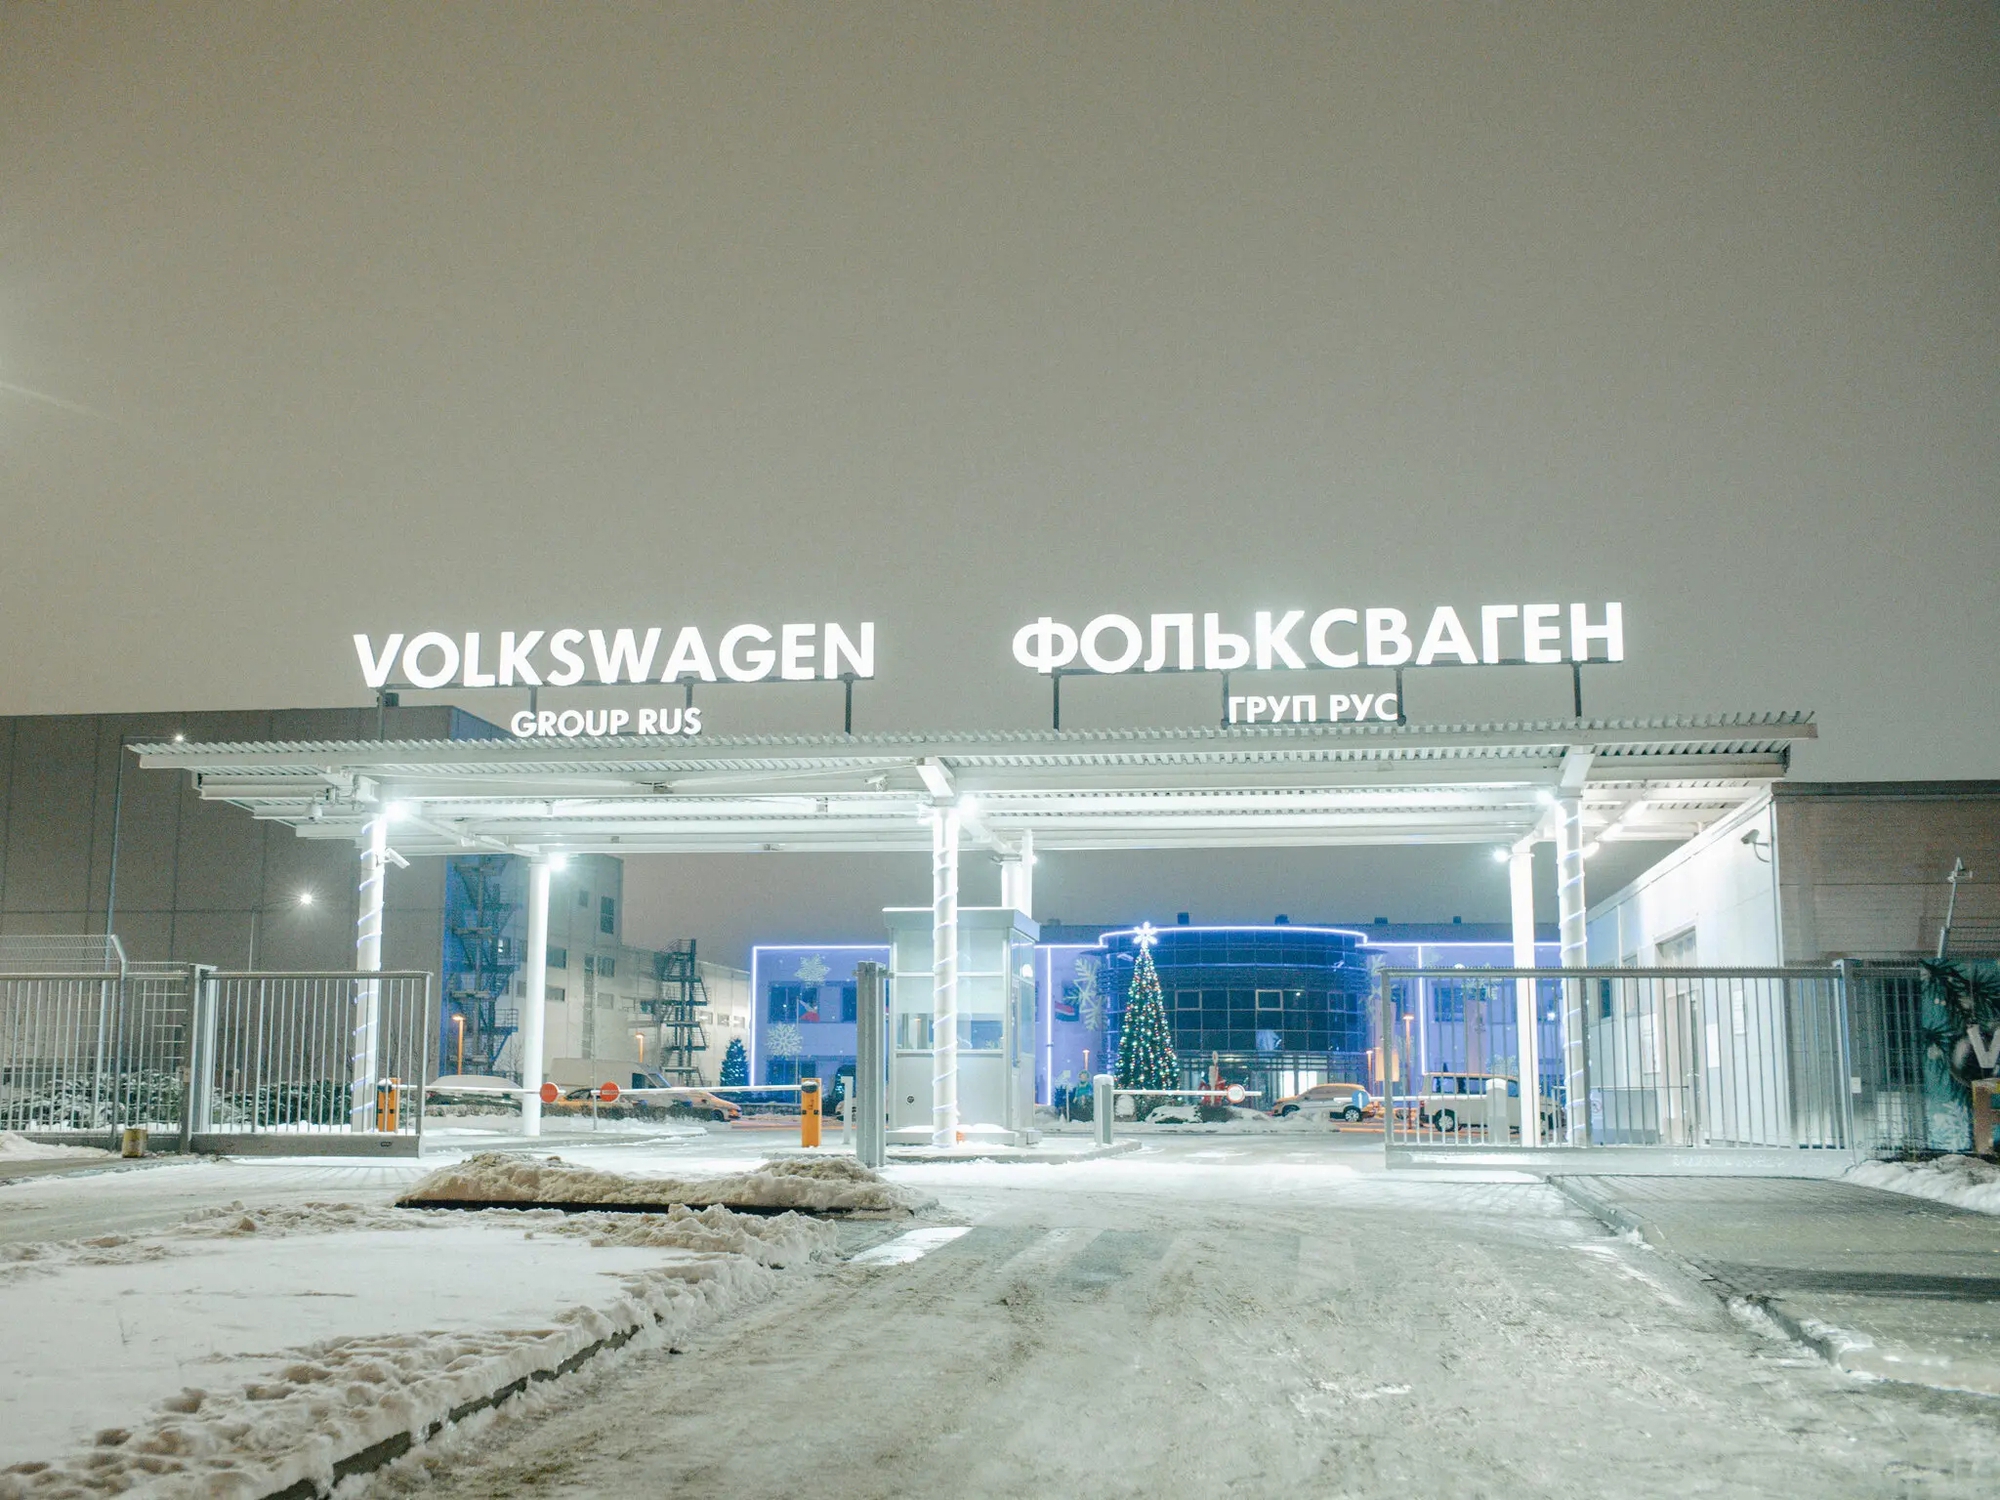 Nhà máy Volkswagen đóng cửa ở Kaluga, Nga. Sự chậm lại trong sản xuất ô tô là một trong những dấu hiệu rõ ràng nhất về tác động của các biện pháp trừng phạt của phương Tây đối với nền kinh tế Nga. Ảnh: @Nanna Heitmann/ Thời báo New York.